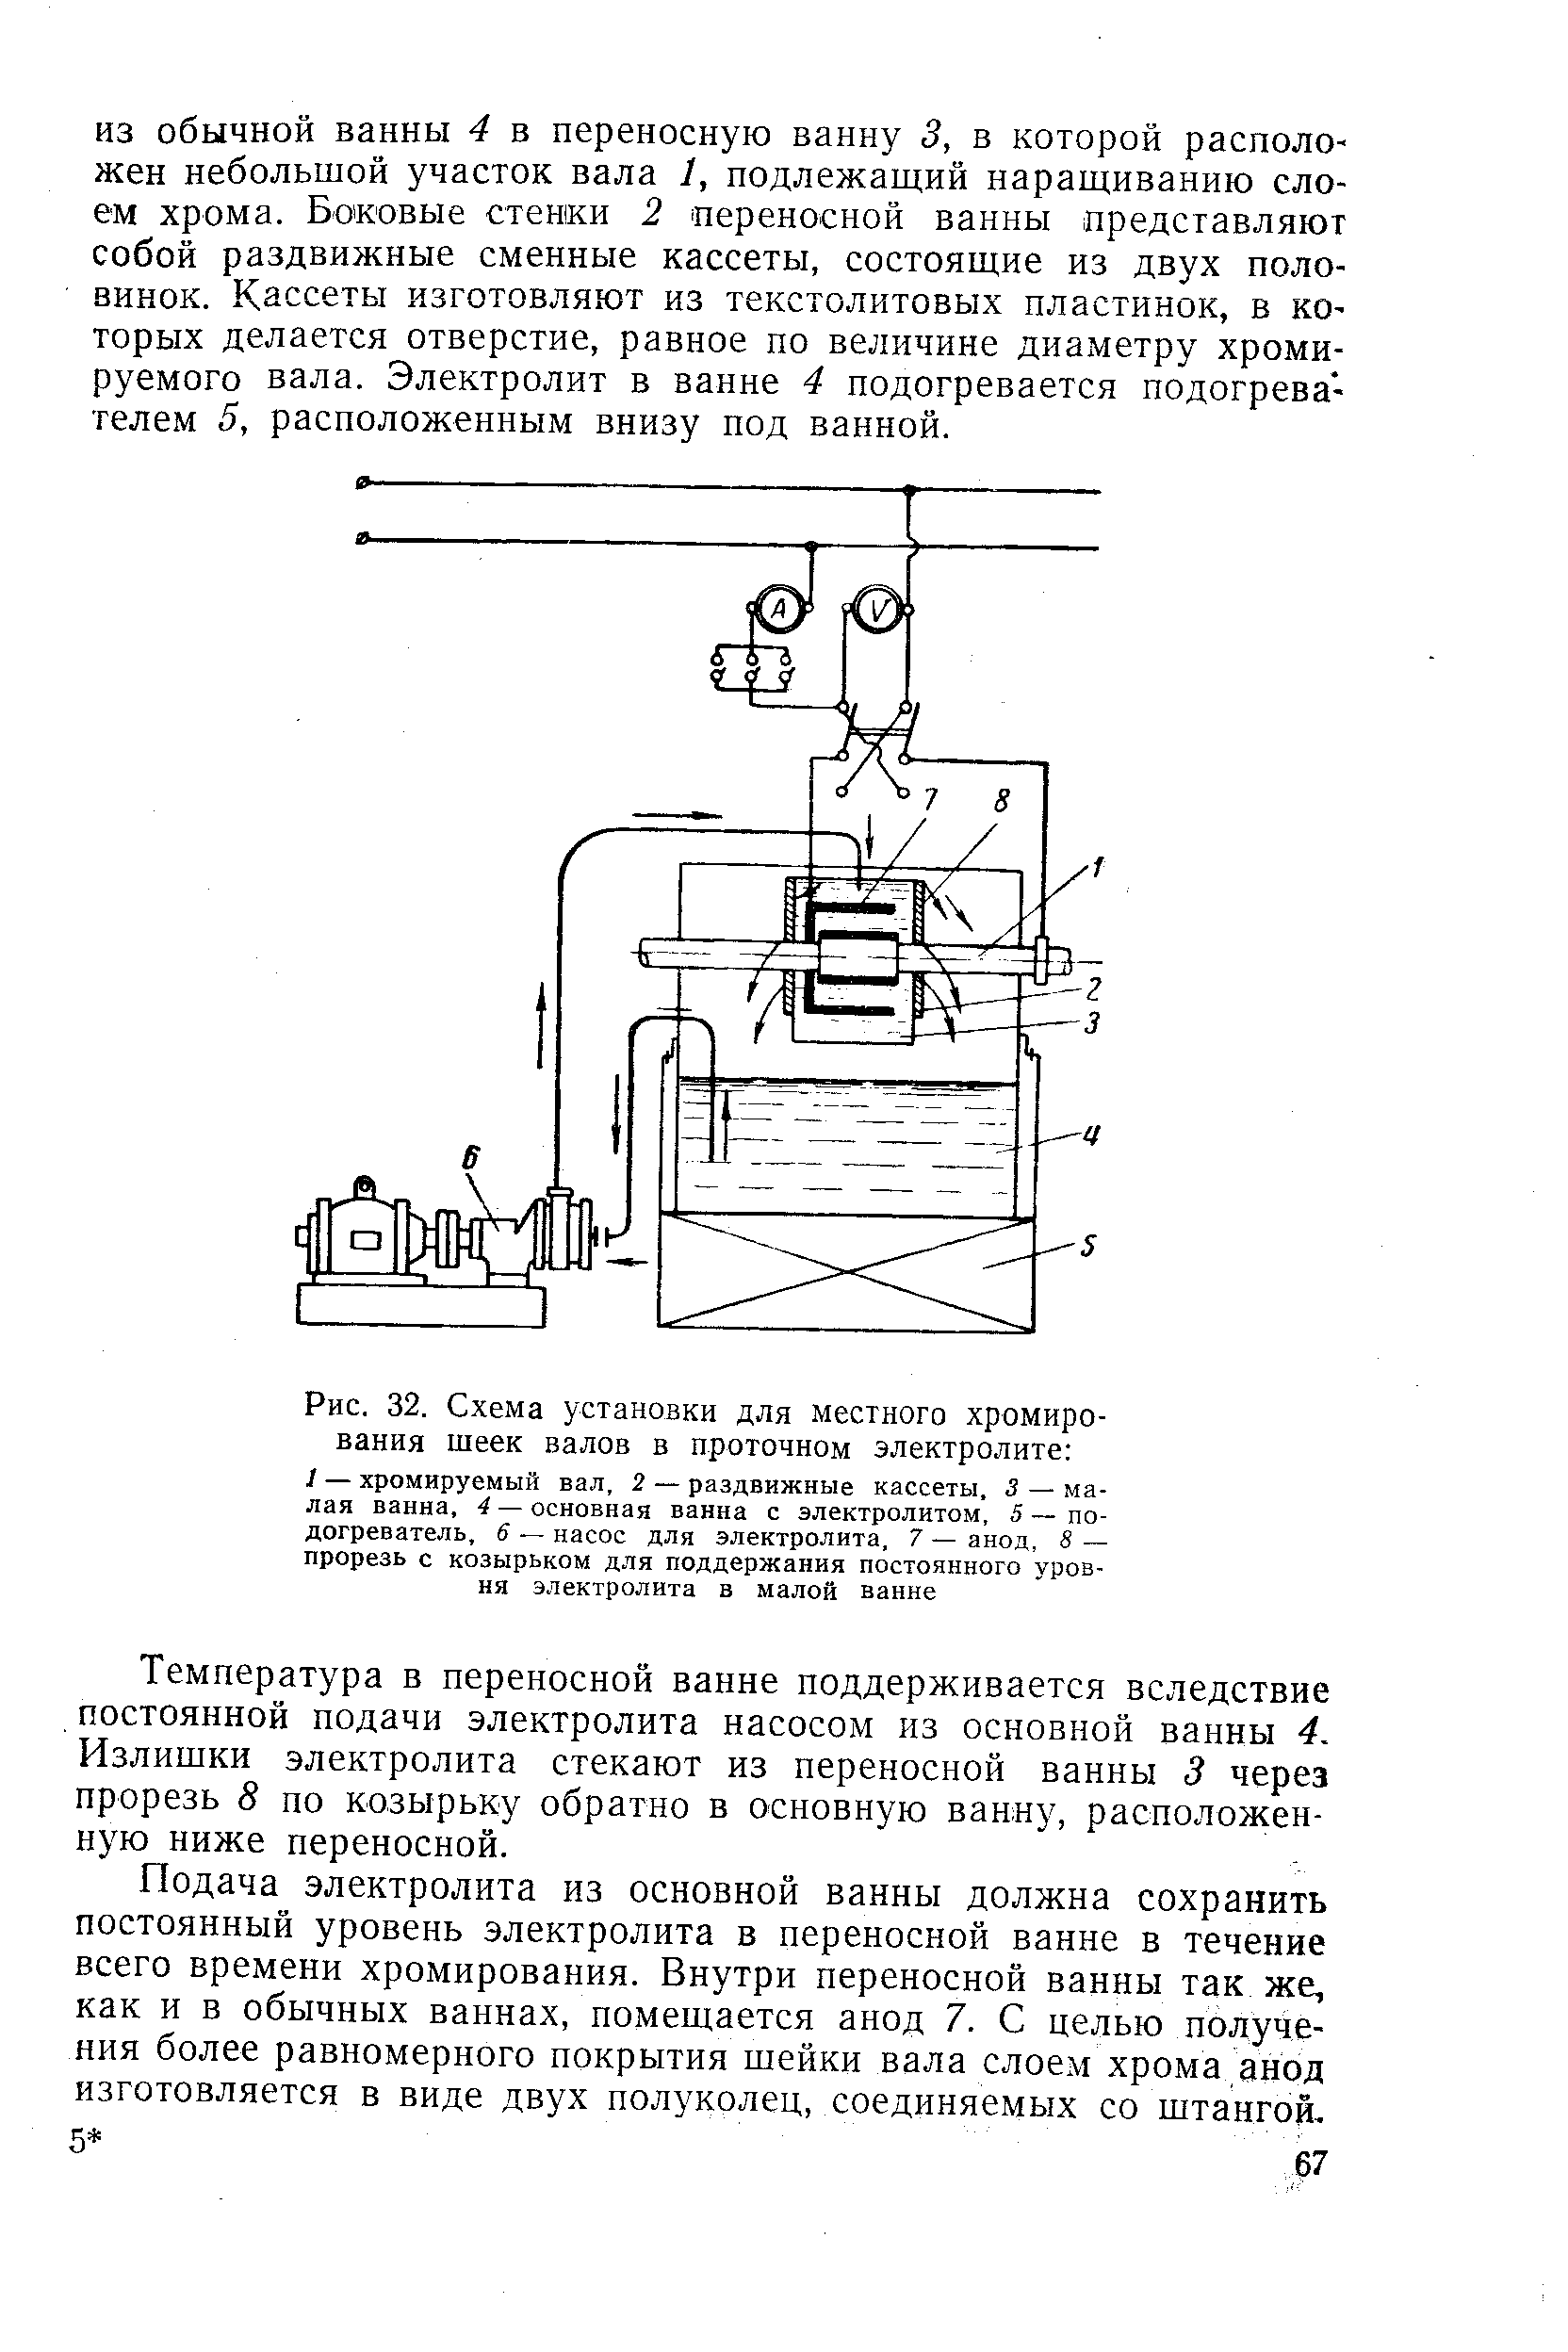 Рис. 32. Схема установки для местного хромирования шеек валов в проточном электролите 
